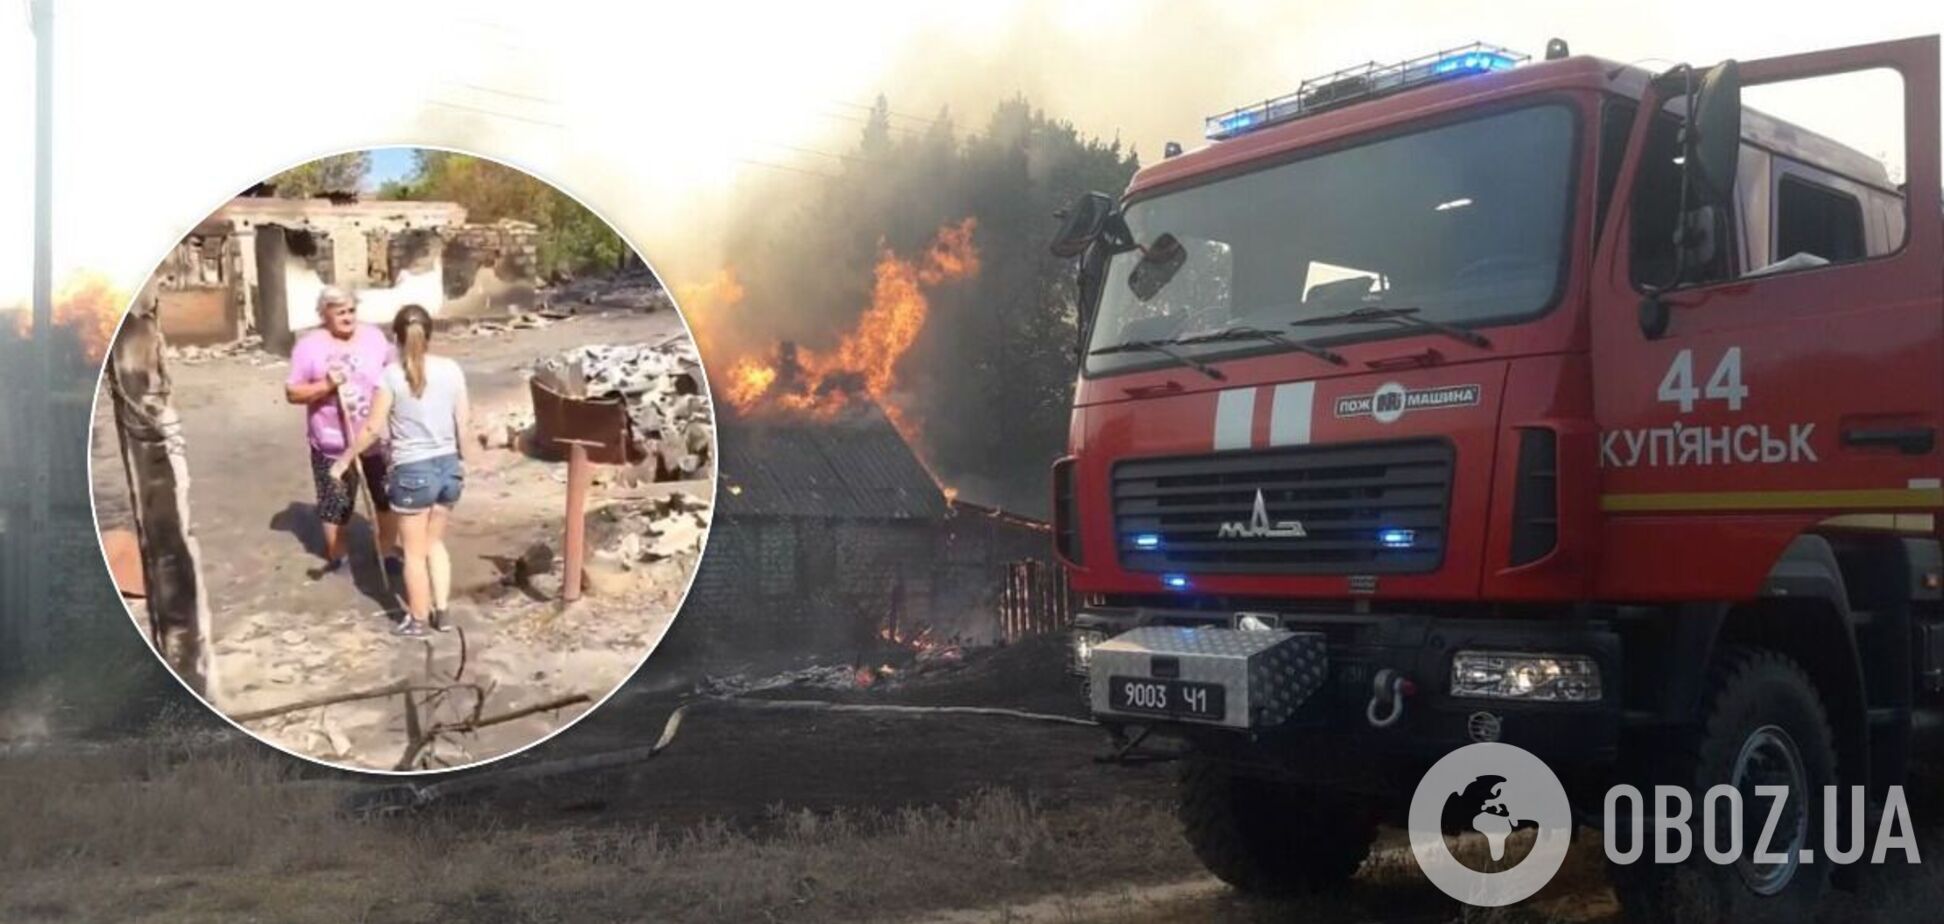 Последствия лесных пожаров в Харьковской области